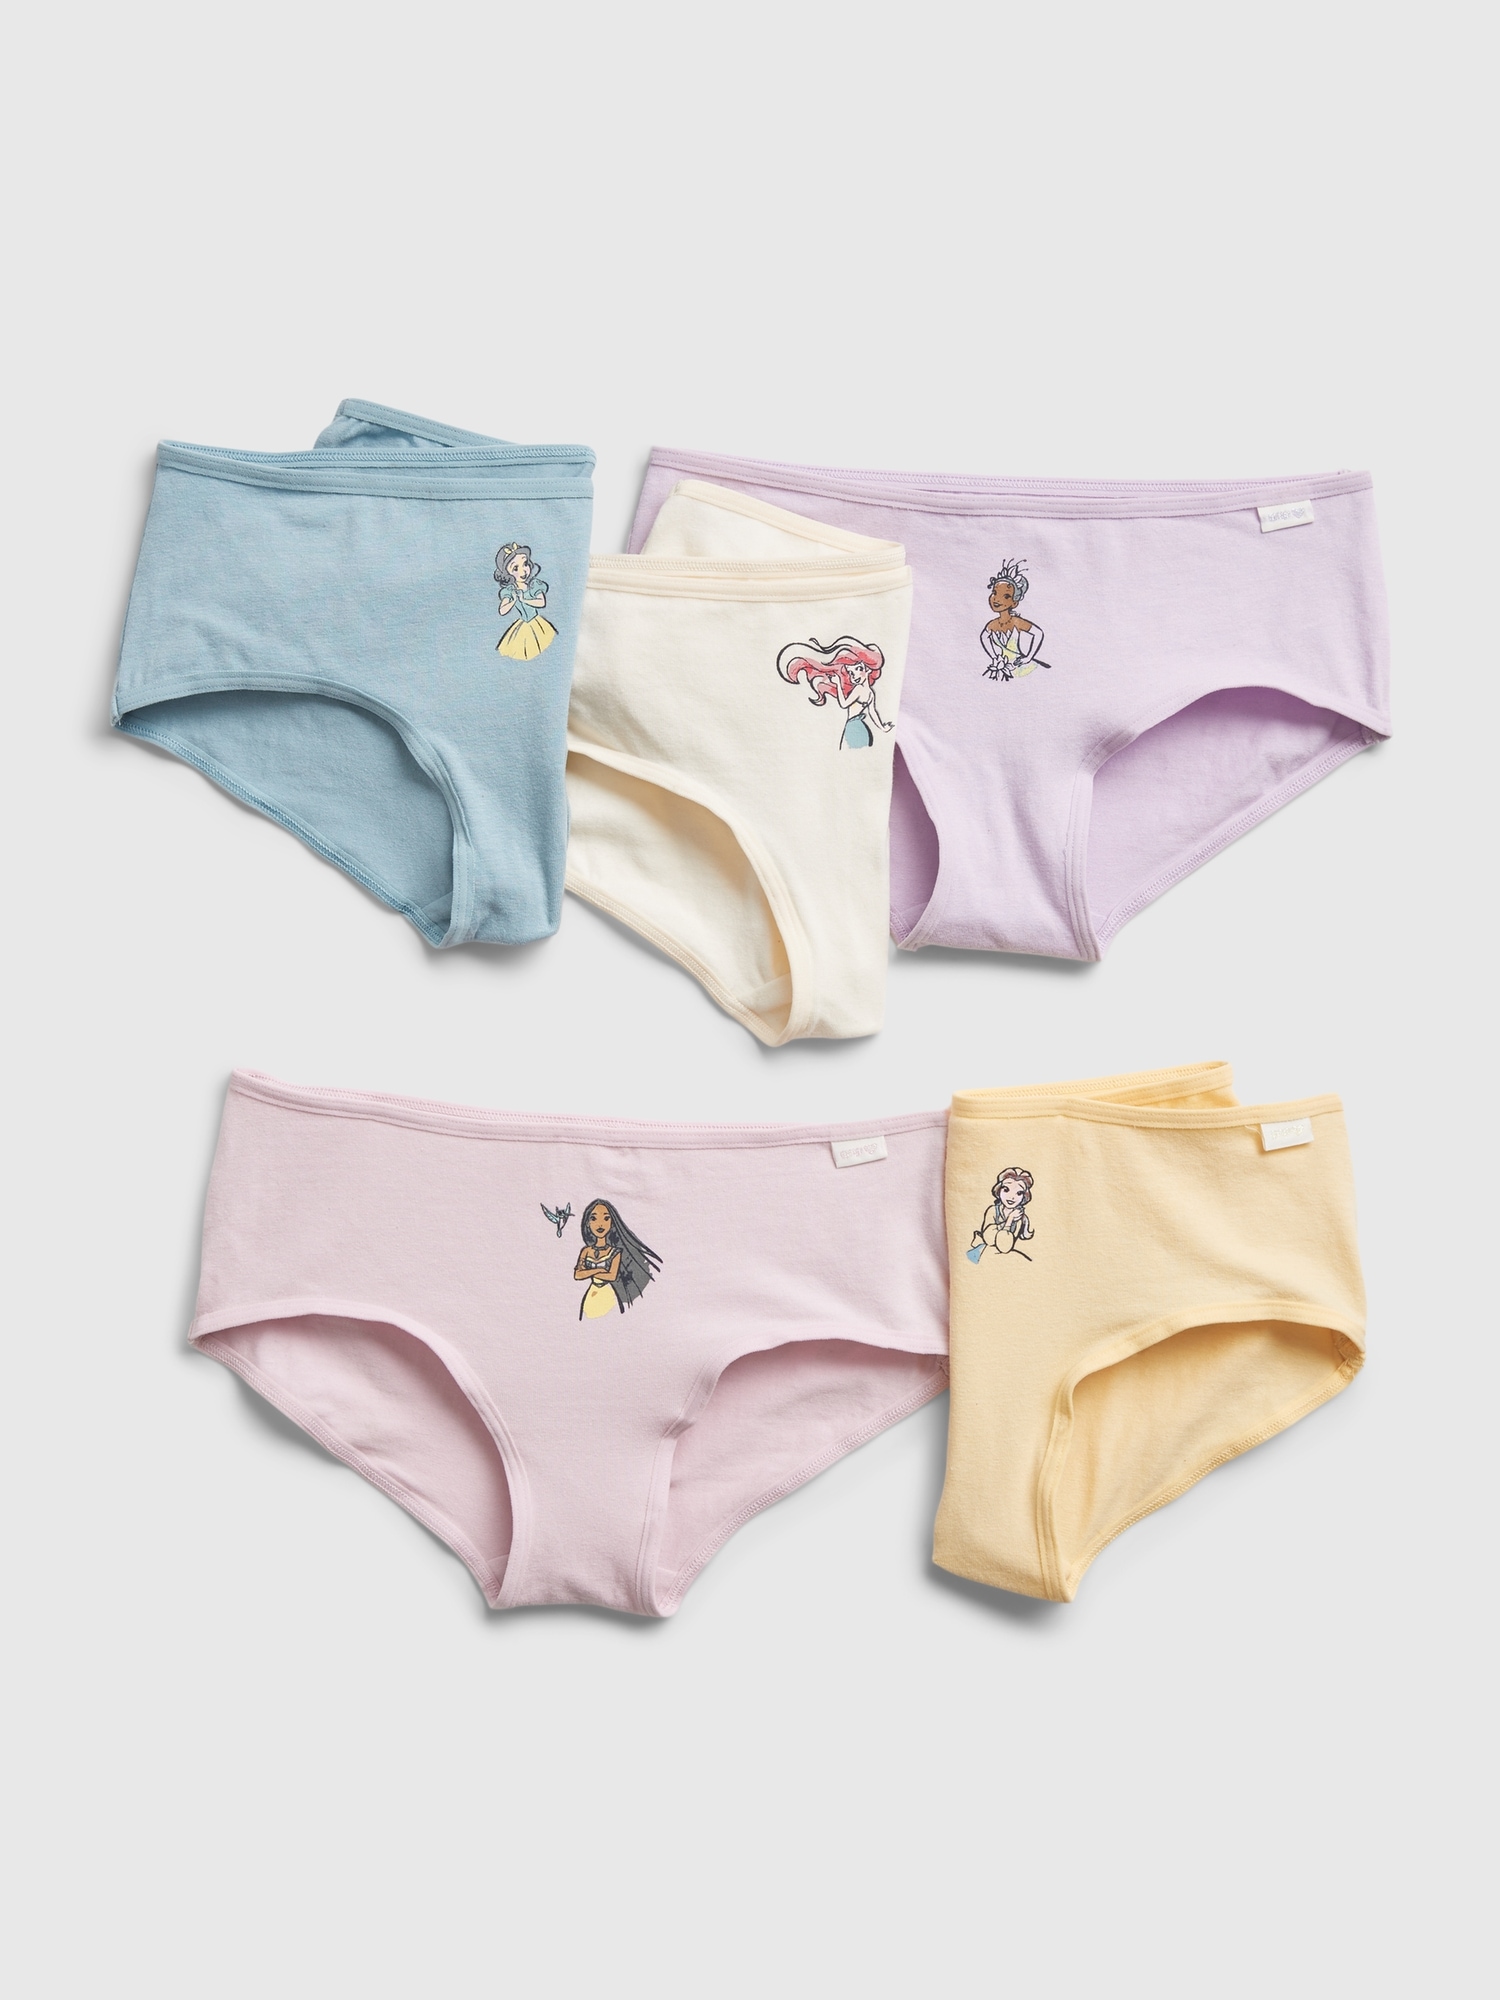 DISNEY Princess - Set of 3 Girls Cotton Panties